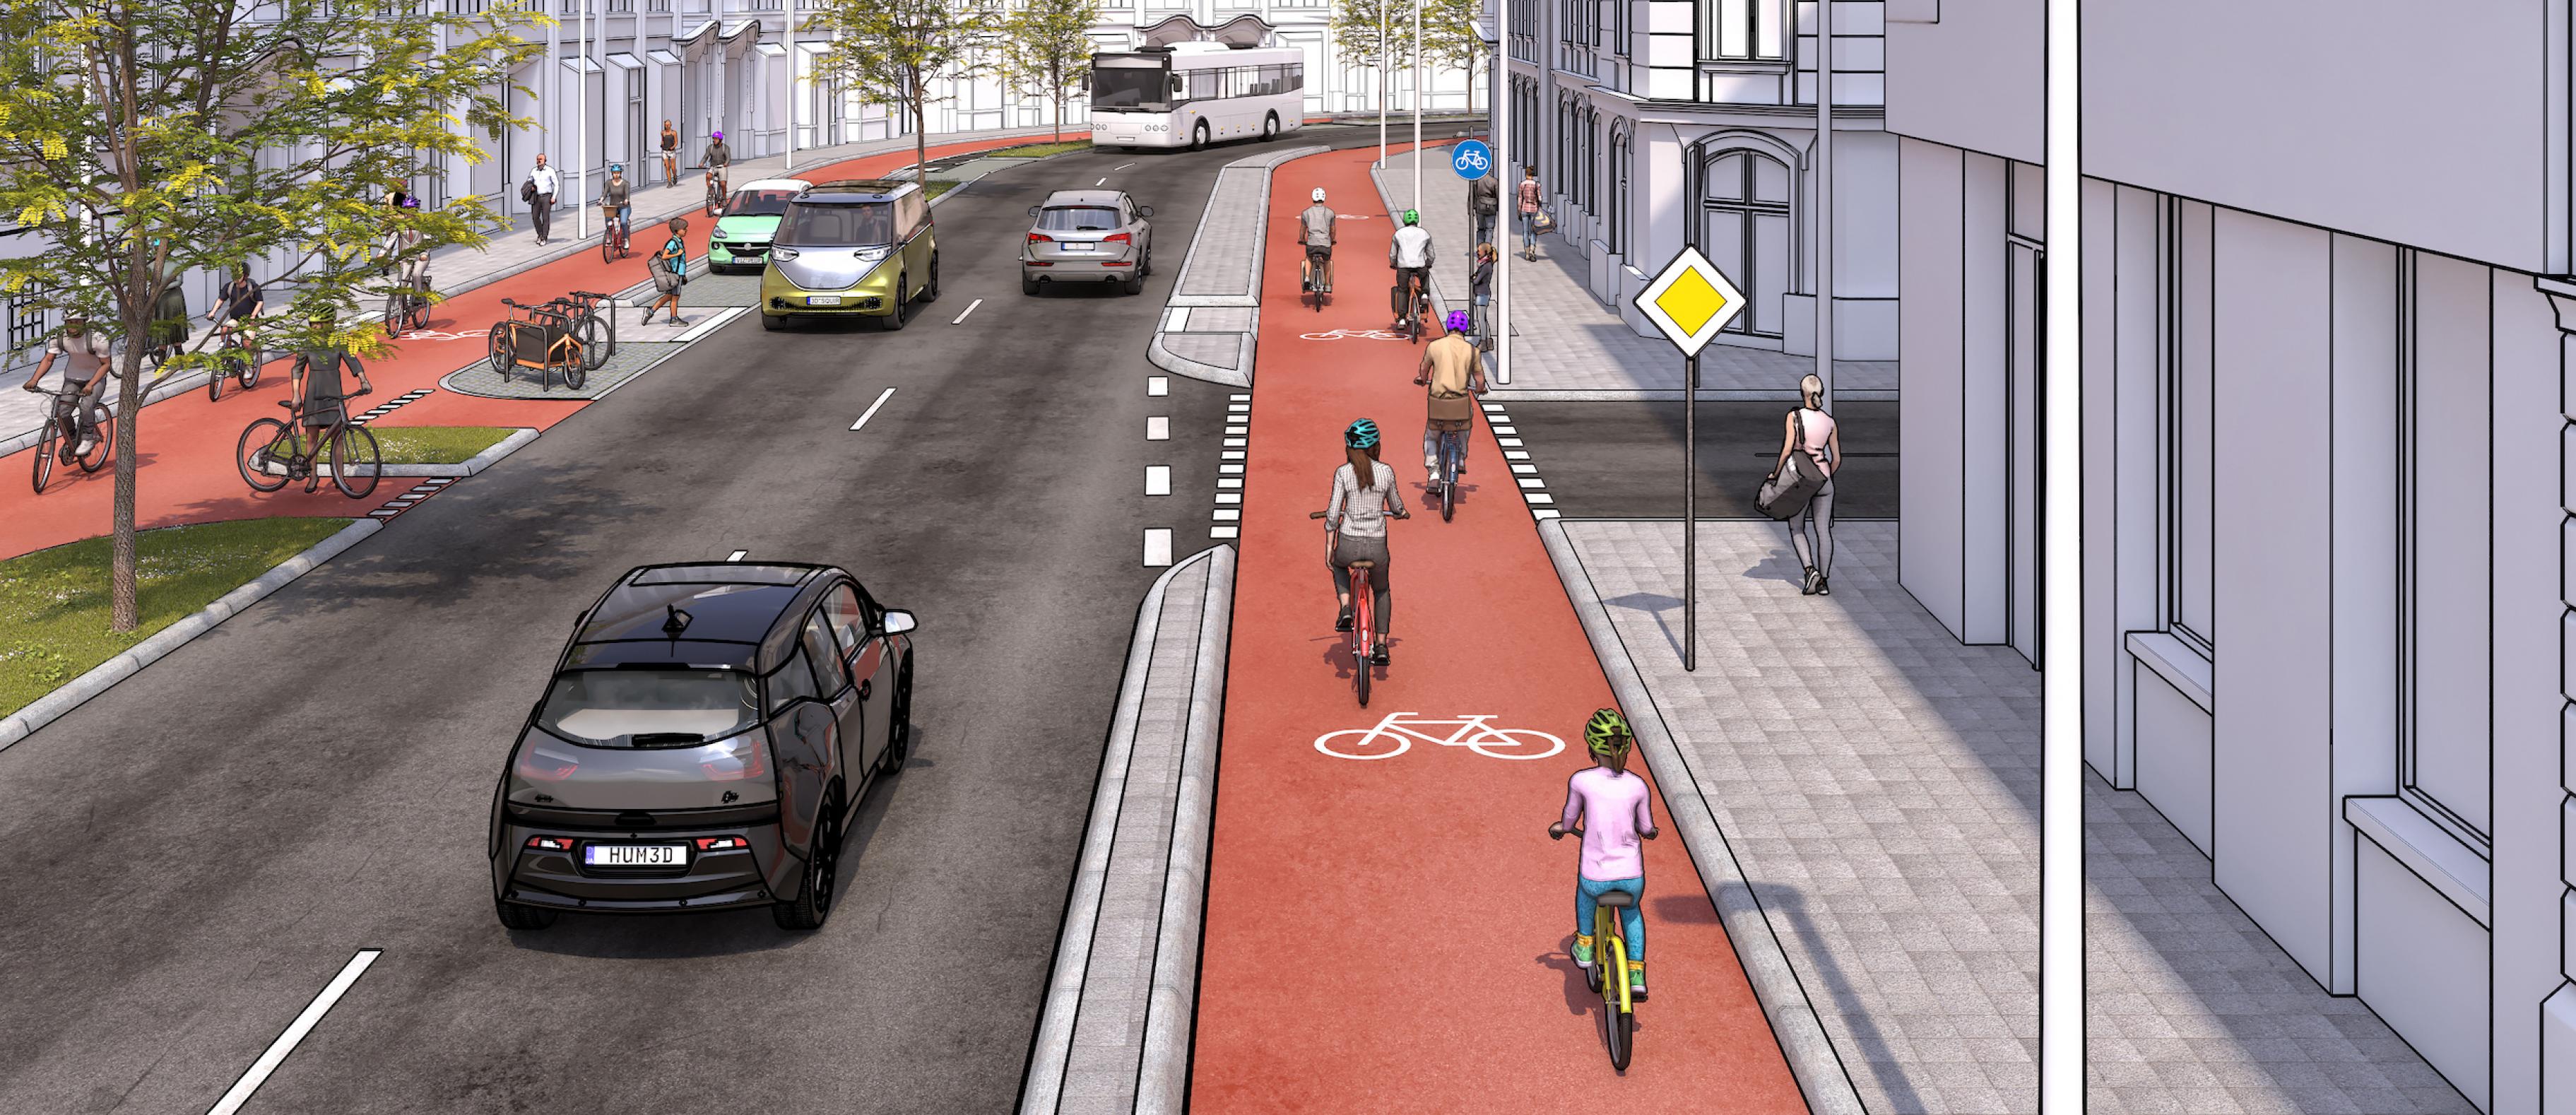 Eine Illustration zeigt eine Straße mit breitem Radweg und breitem Fussweg, 